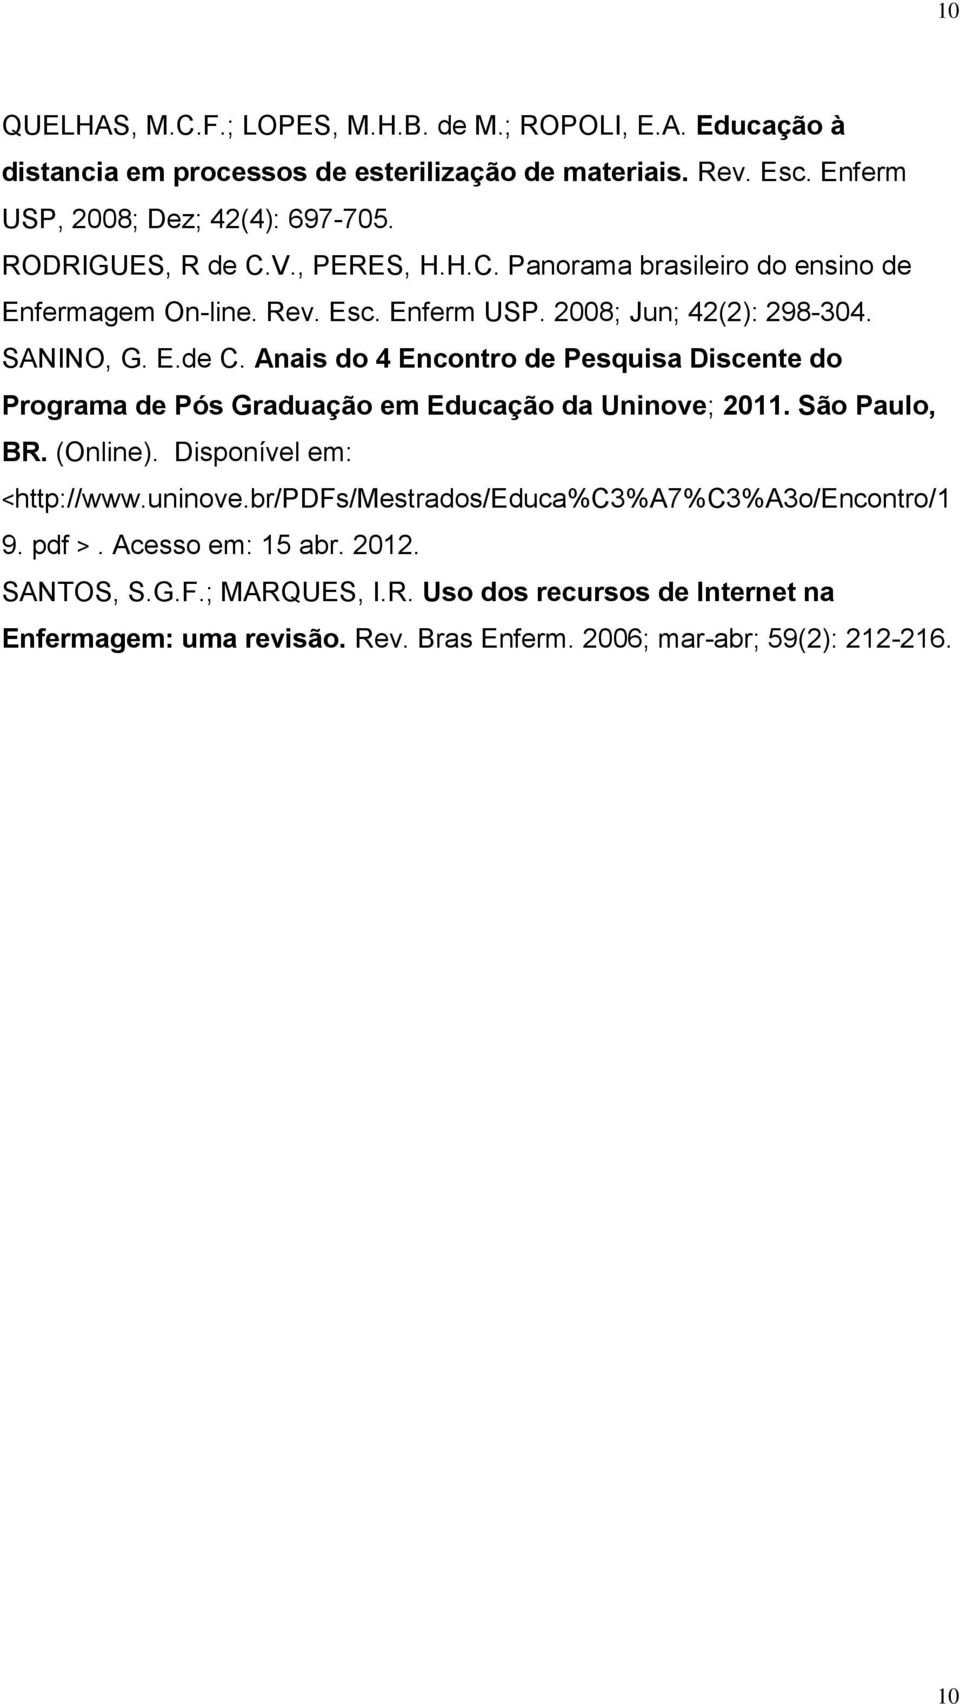 São Paulo, BR. (Online). Disponível em: <http://www.uninove.br/pdfs/mestrados/educa%c3%a7%c3%a3o/encontro/1 9. pdf >. Acesso em: 15 abr. 2012. SANTOS, S.G.F.; MARQUES, I.R. Uso dos recursos de Internet na Enfermagem: uma revisão.